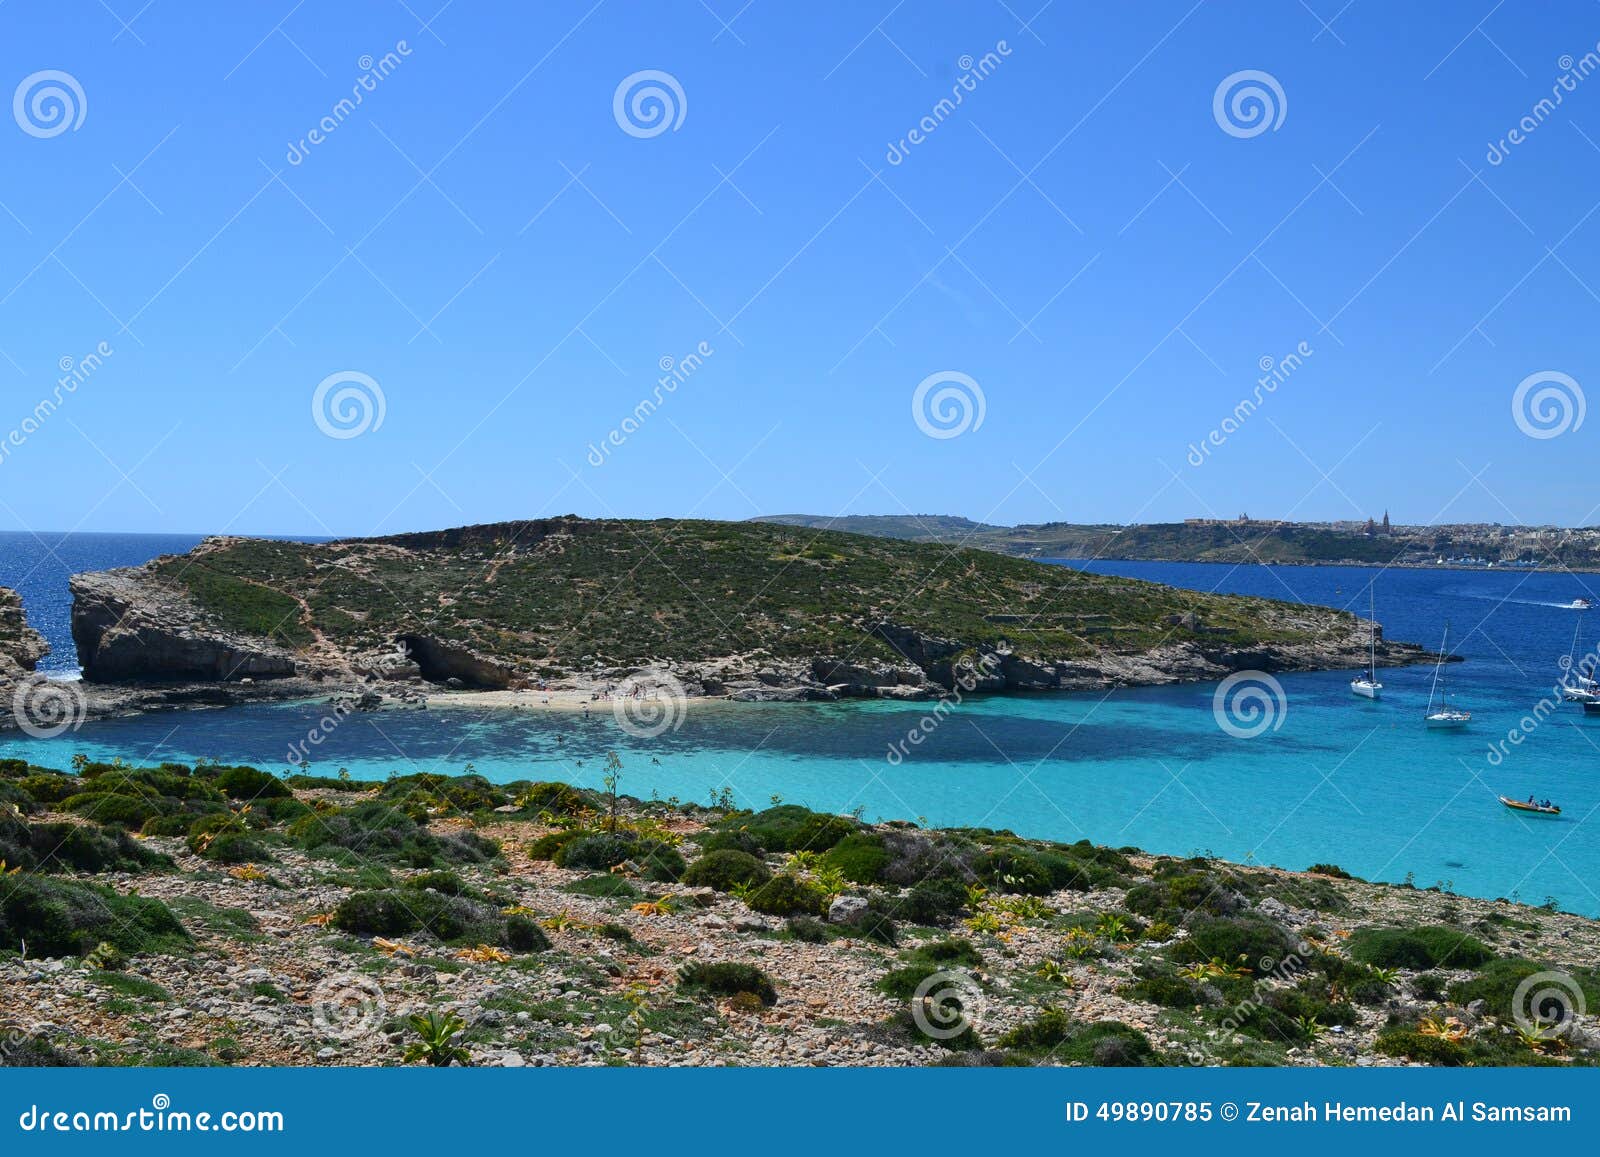 amazing scene of the blue lagoon in comino malta